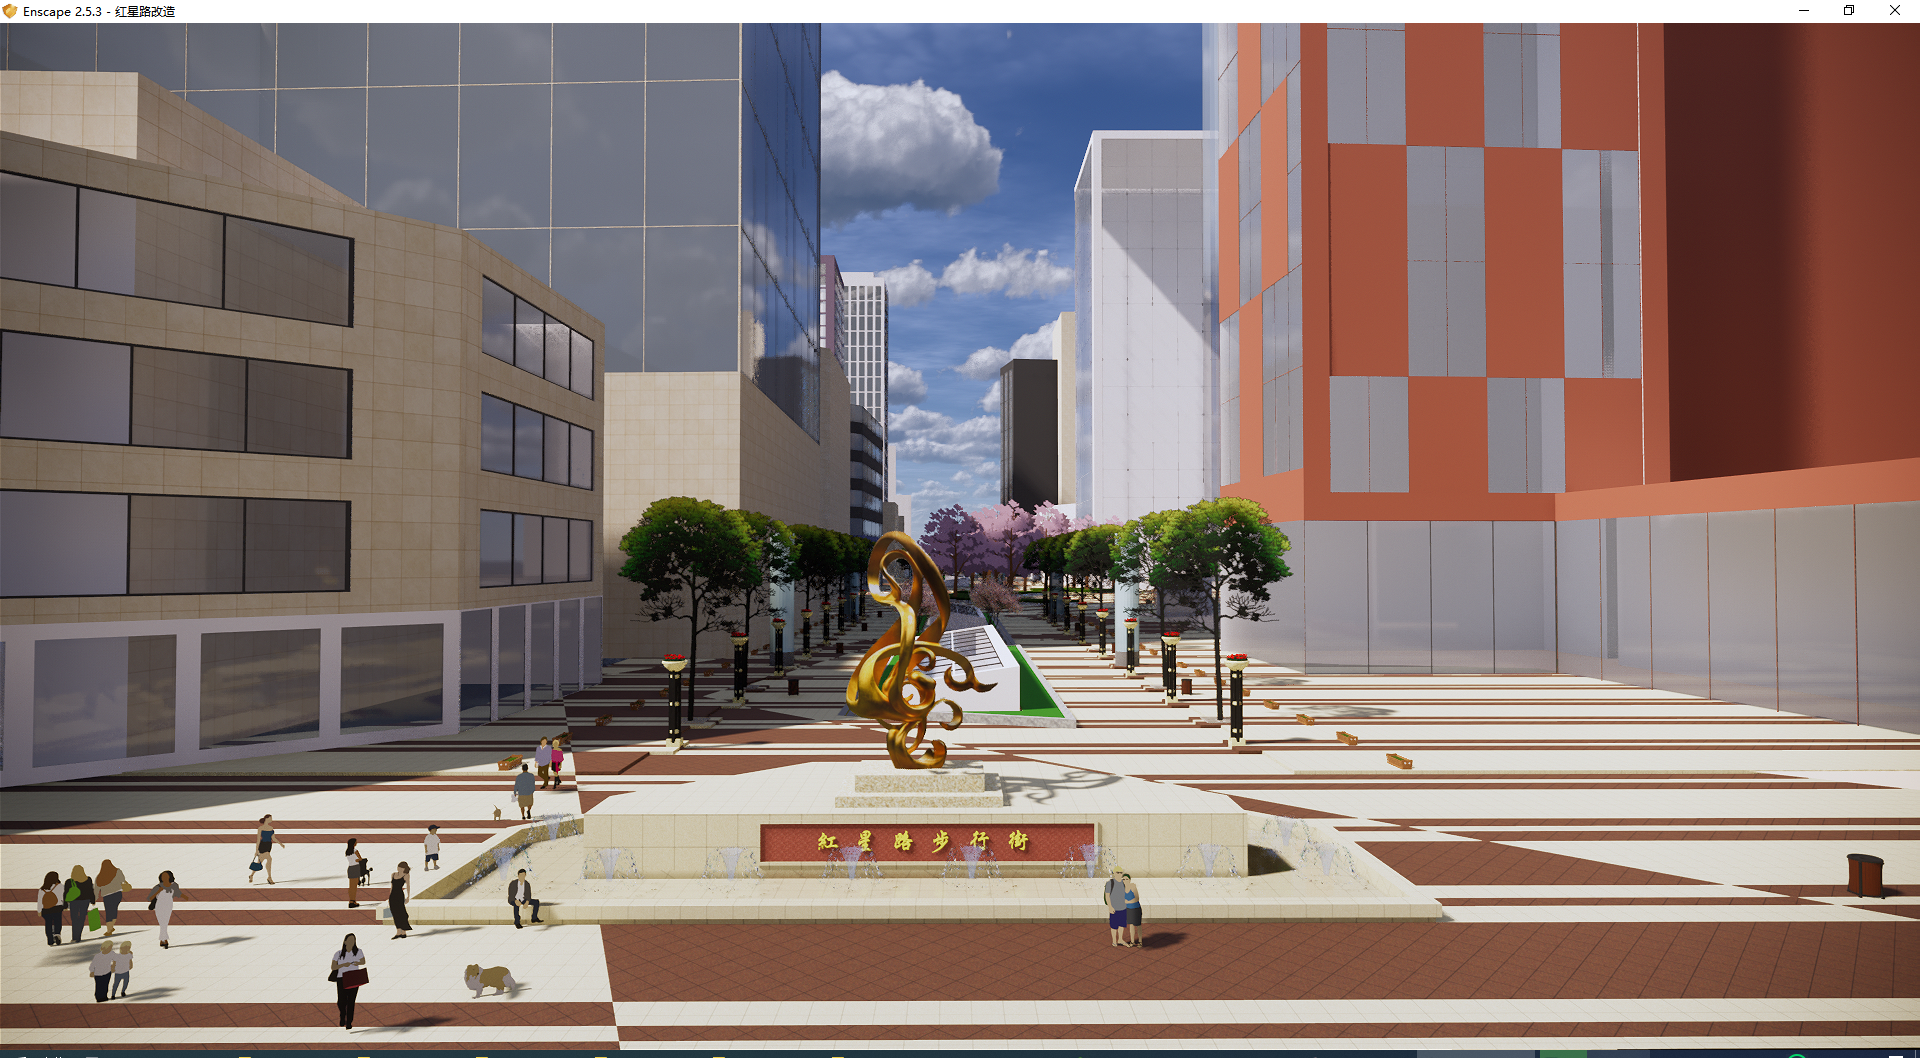 现代商业街区，水景雕塑喷泉 (1)su草图模型下载